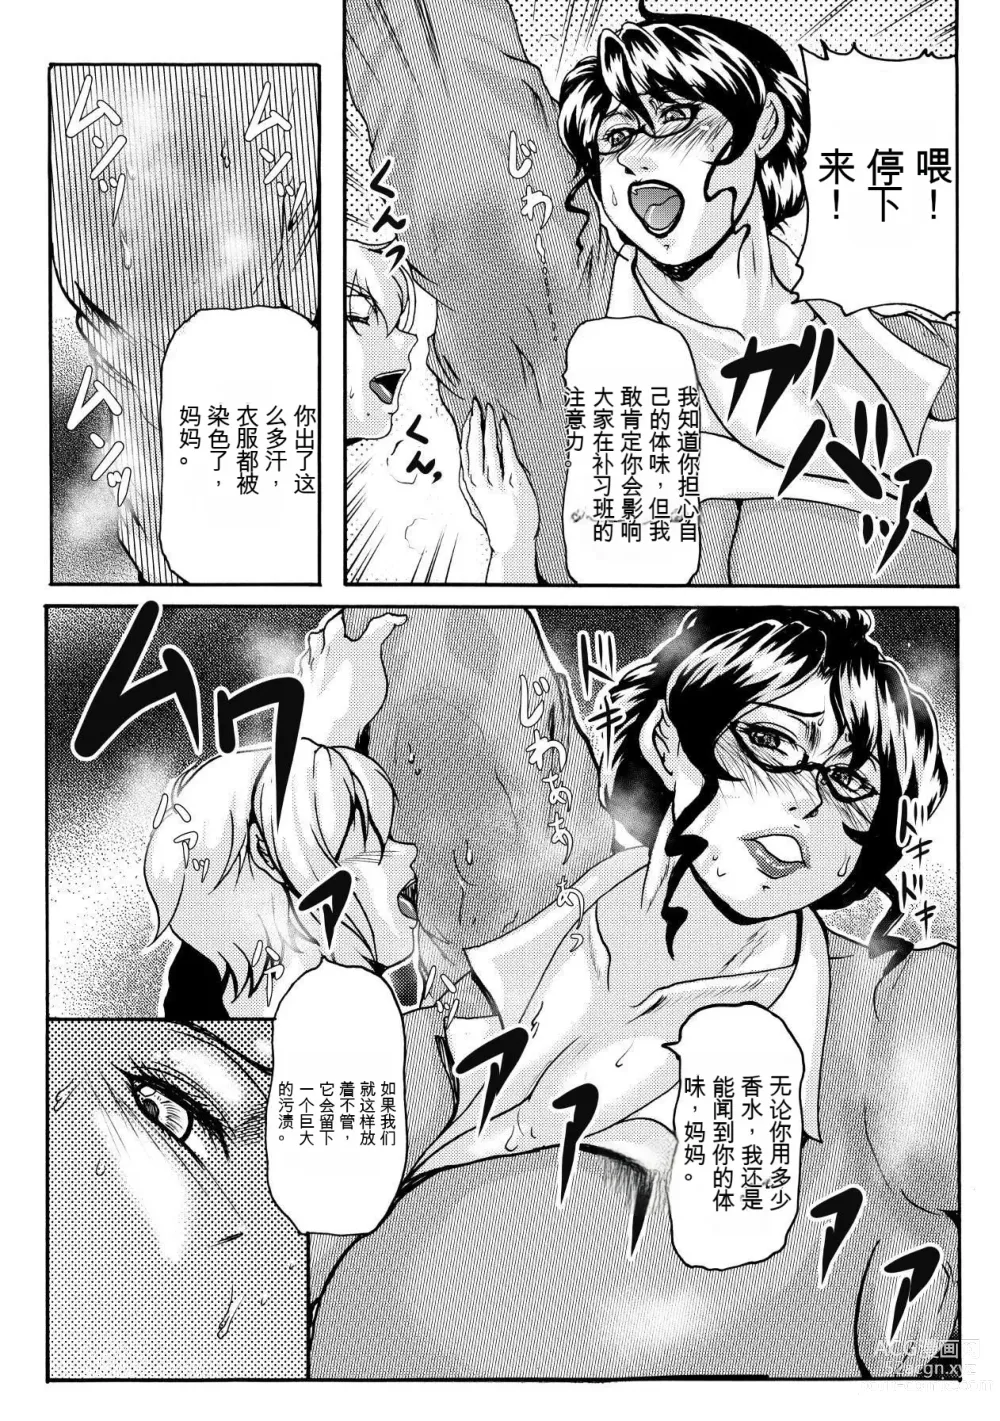 Page 3 of manga NO CARE